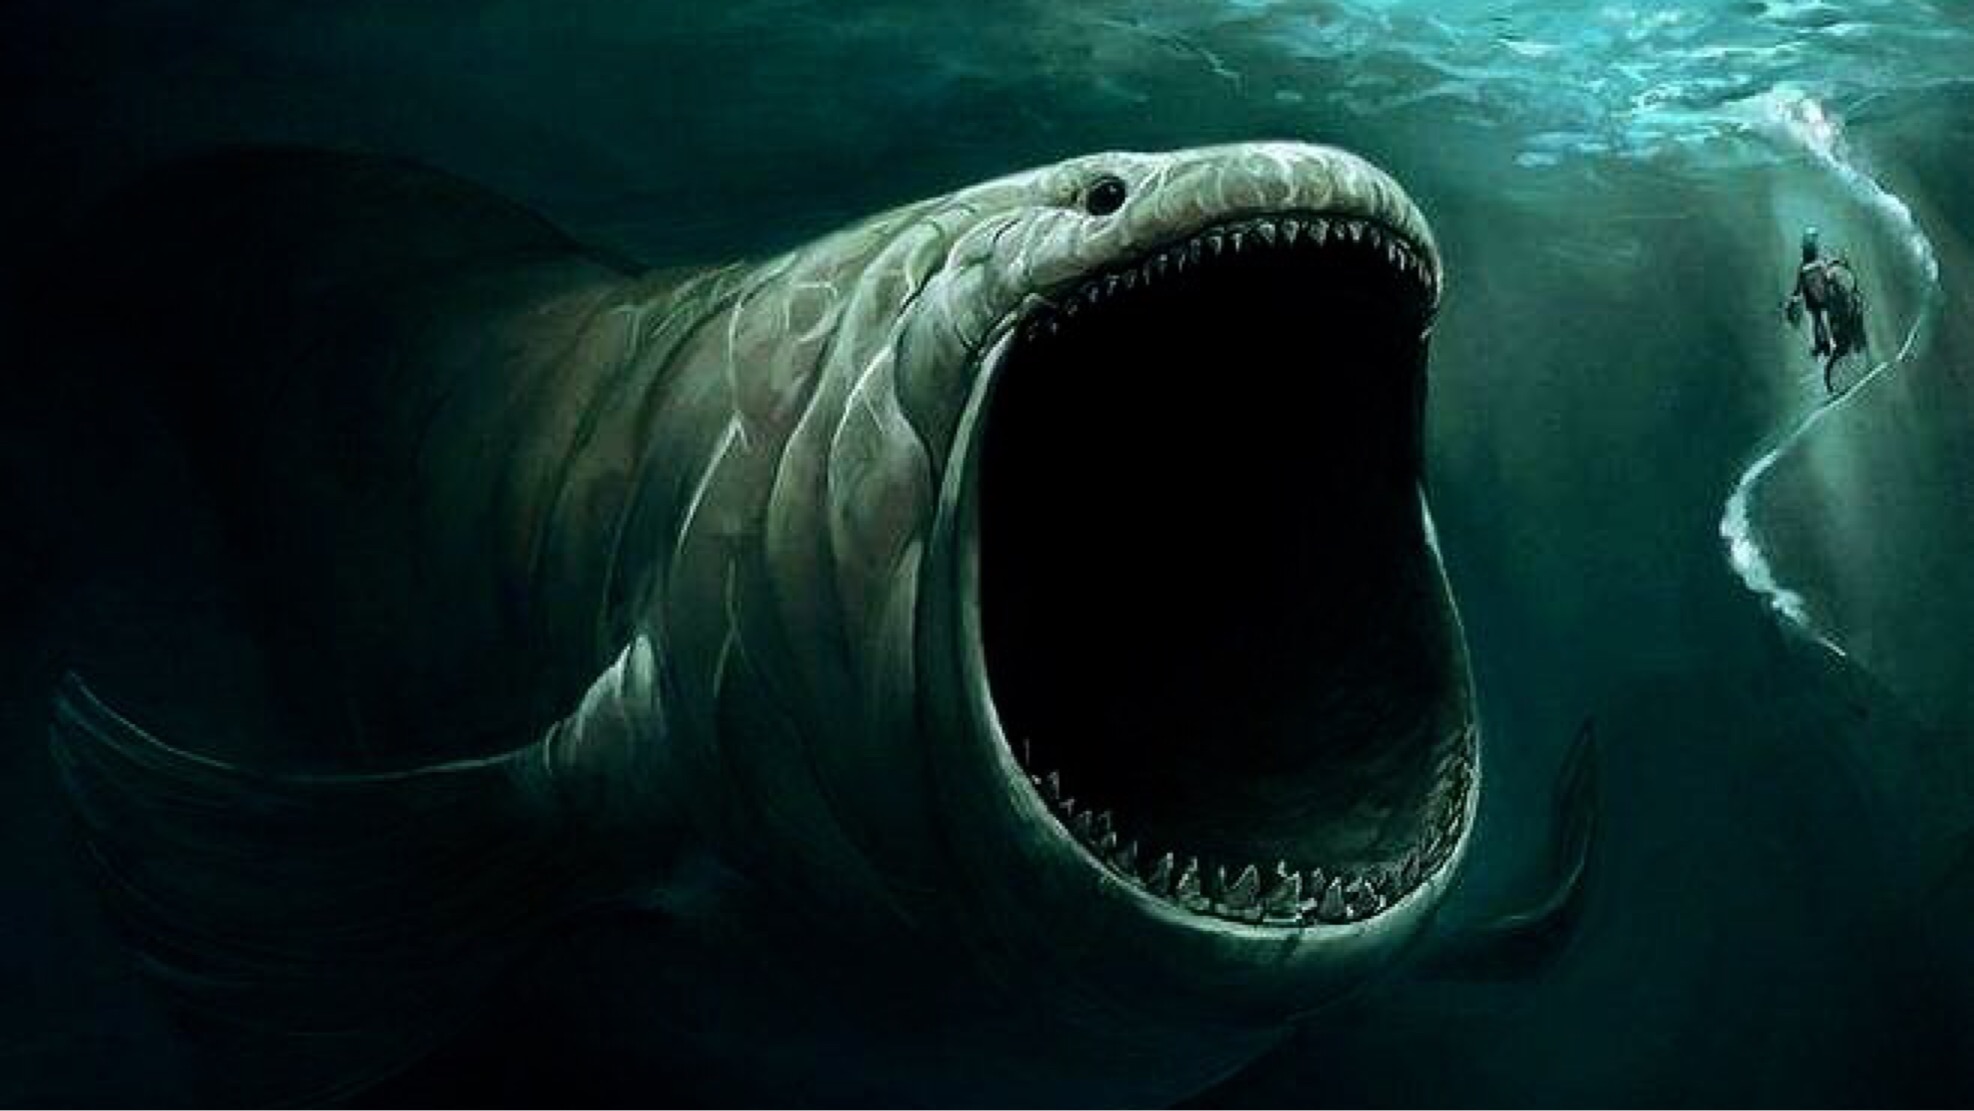 40亿年前沧古时期的海底巨型生物已经被证实存在了 - 哔哩哔哩